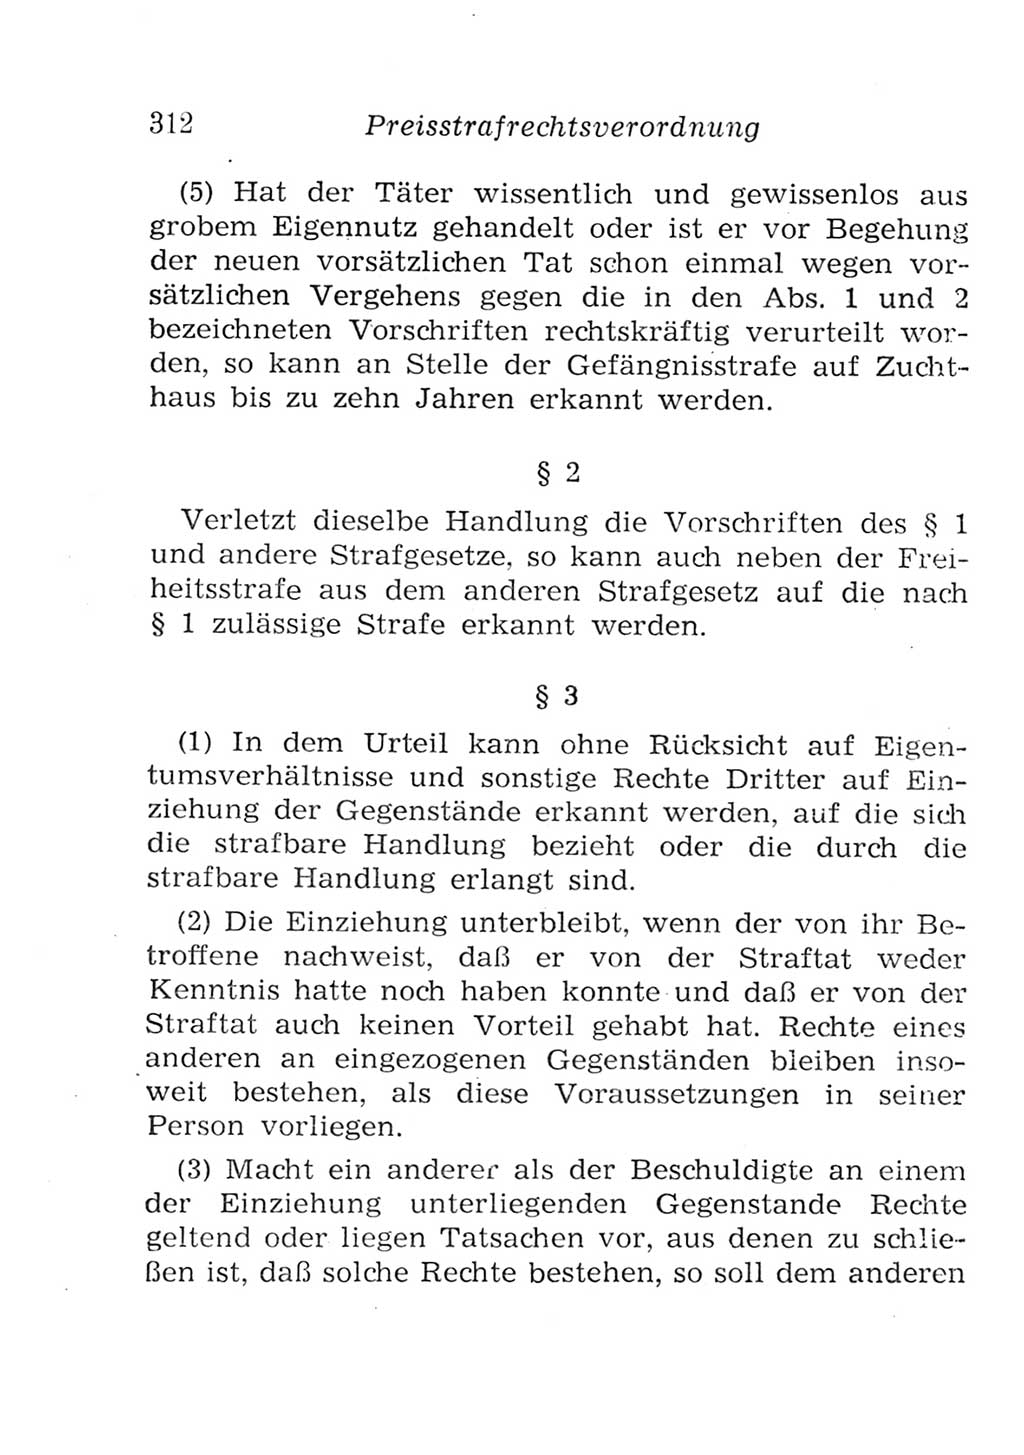 Strafgesetzbuch (StGB) und andere Strafgesetze [Deutsche Demokratische Republik (DDR)] 1957, Seite 312 (StGB Strafges. DDR 1957, S. 312)